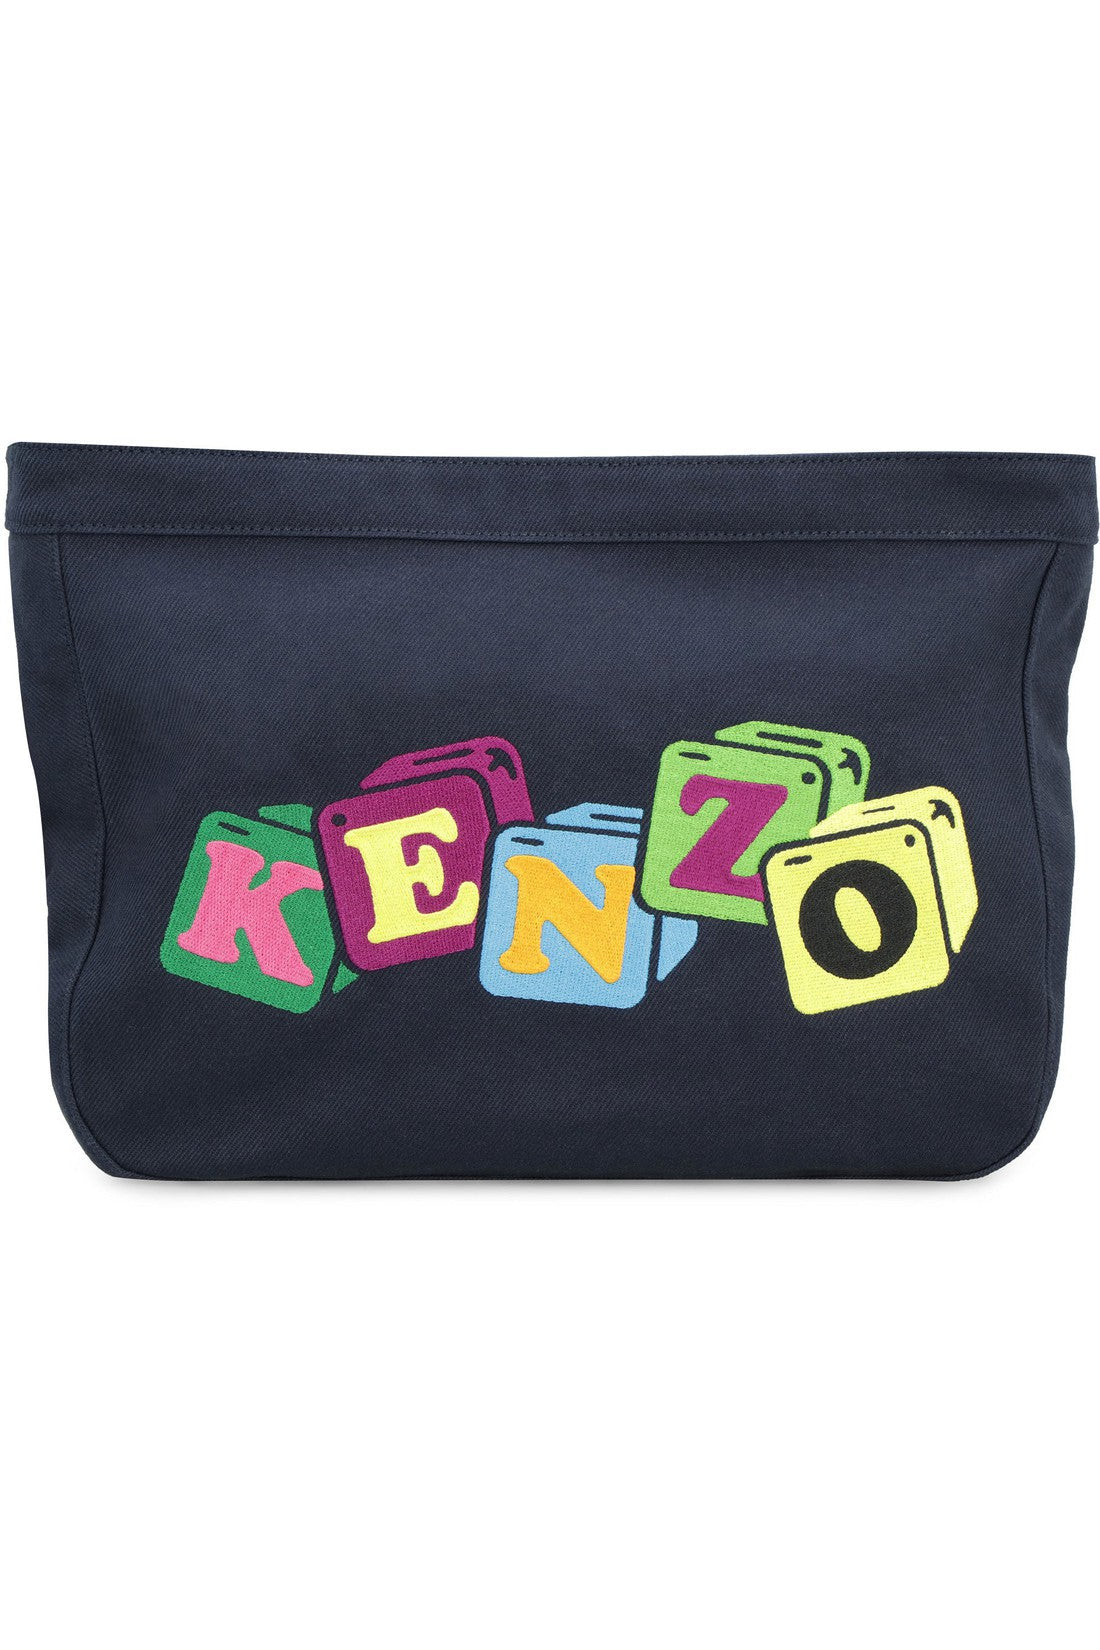 Kenzo-OUTLET-SALE-Embroidered shoulder bag-ARCHIVIST